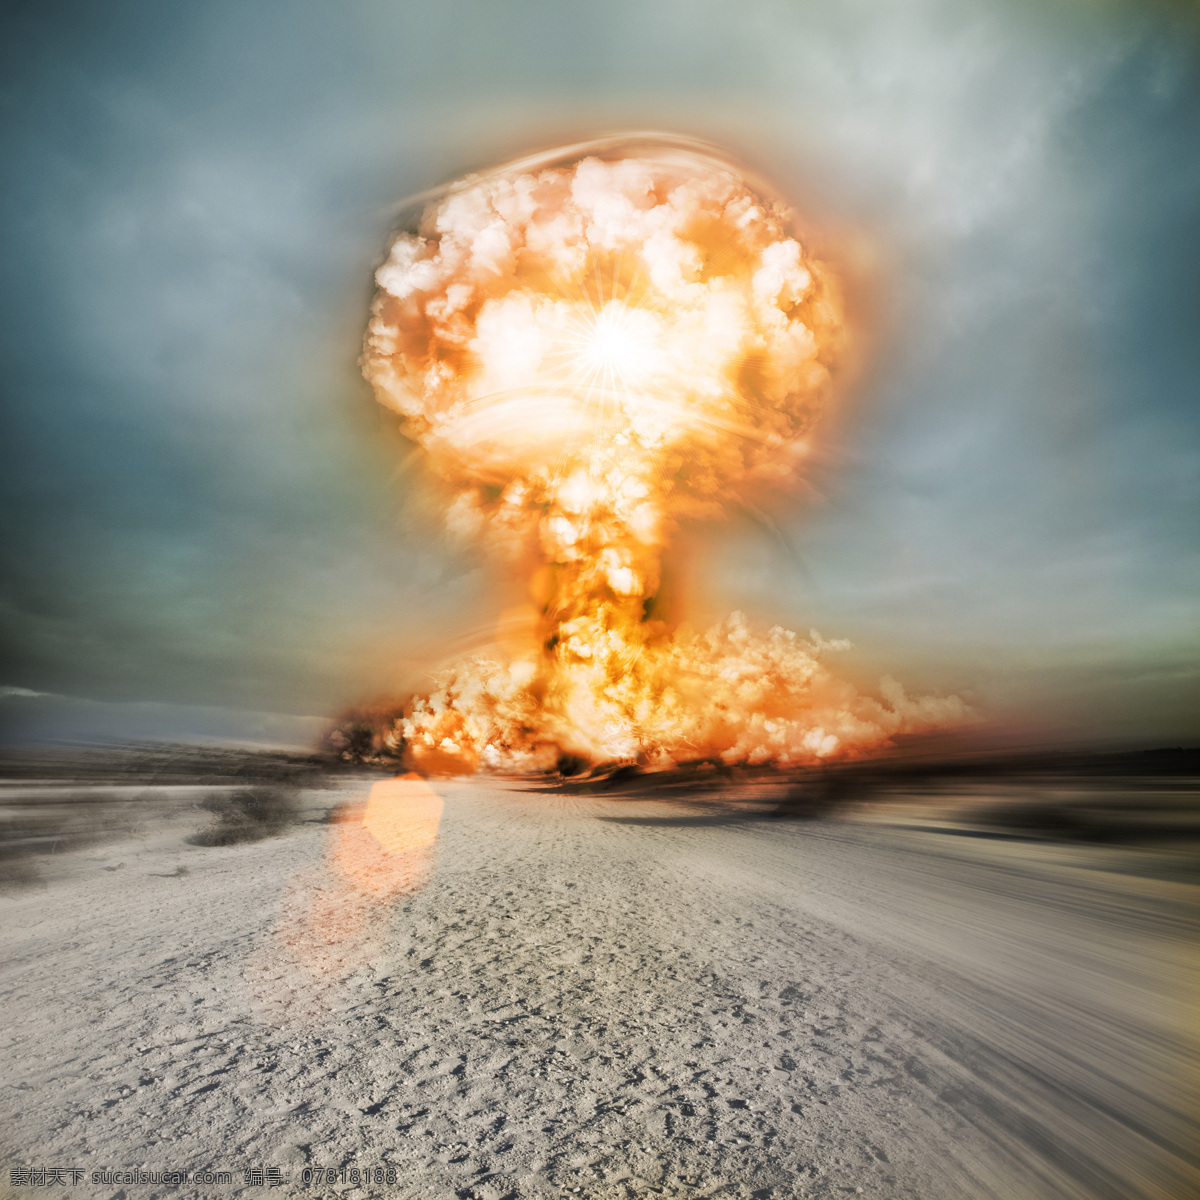 沙漠 原子弹 爆炸 蘑菇云 原子弹爆炸 核爆炸 核武器 其他类别 生活百科